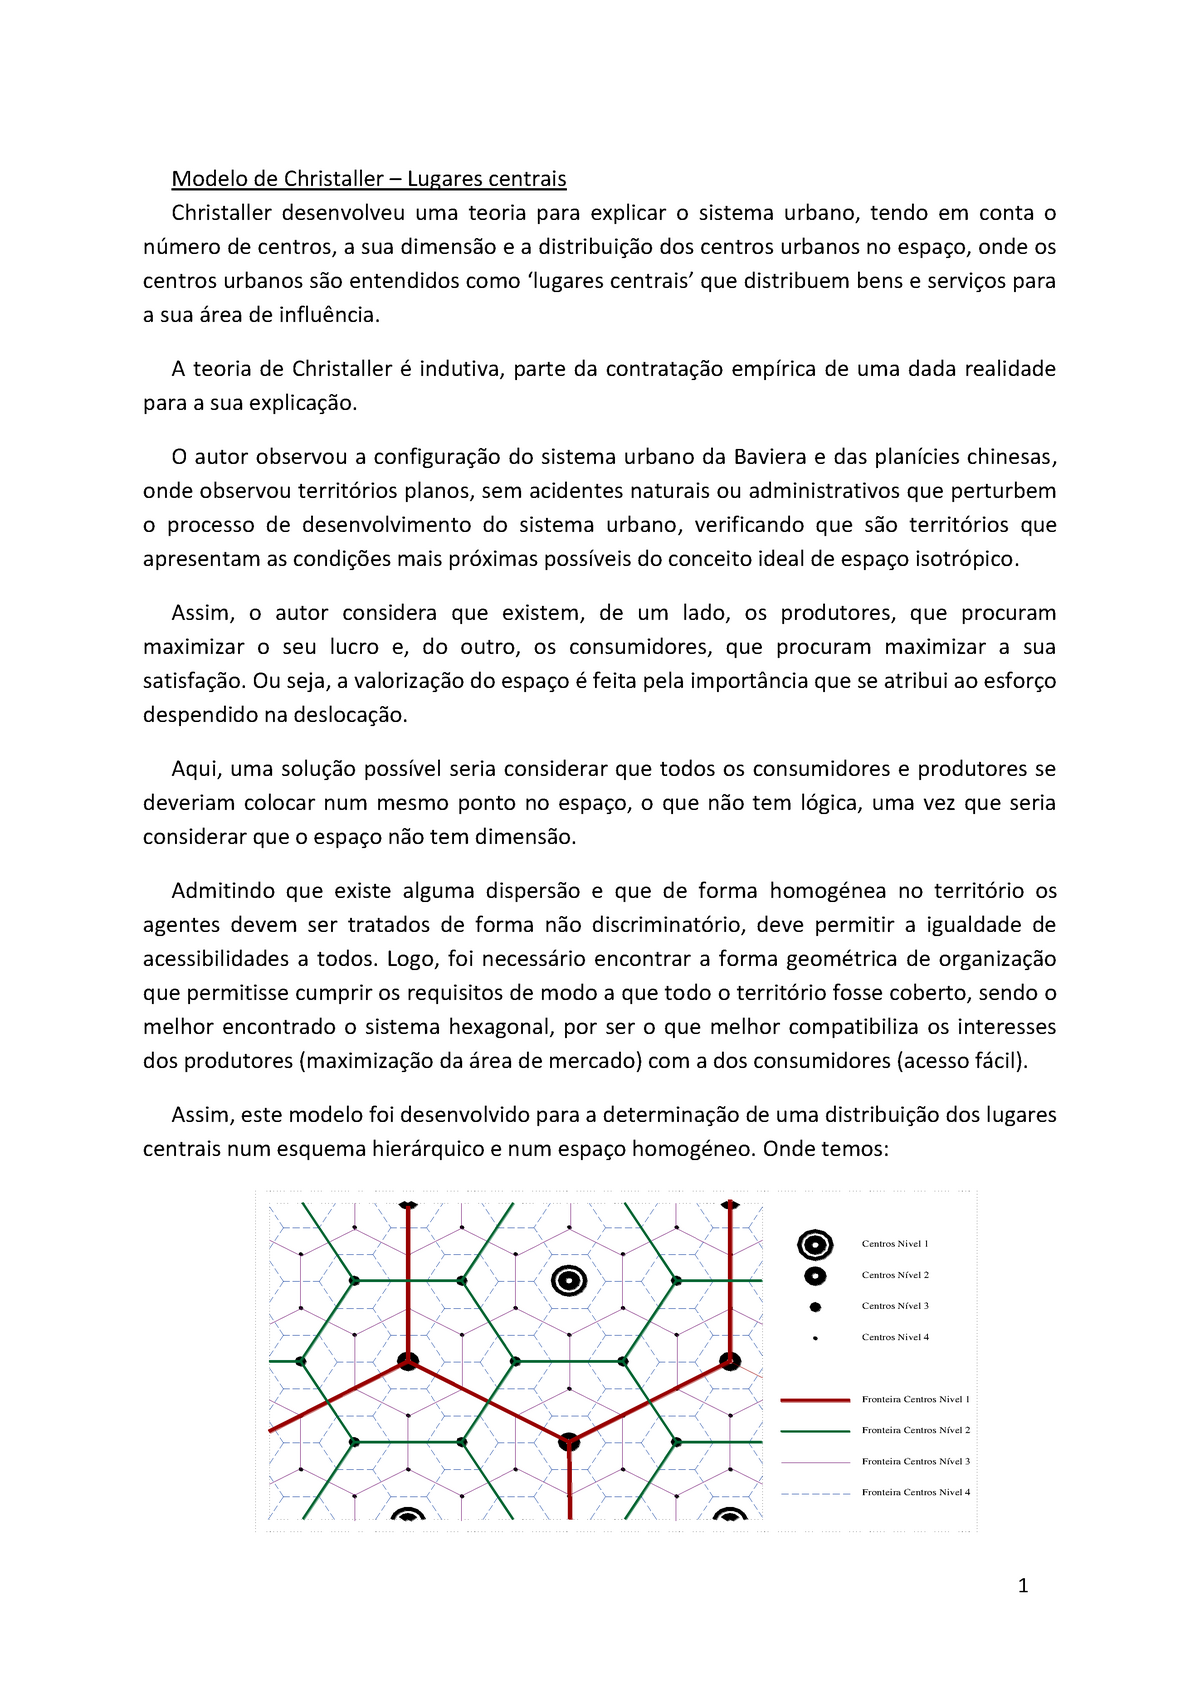 Resumos ERU - Modelo de Christaller Explicado - Economia Regional e Urbana  - UA - Studocu